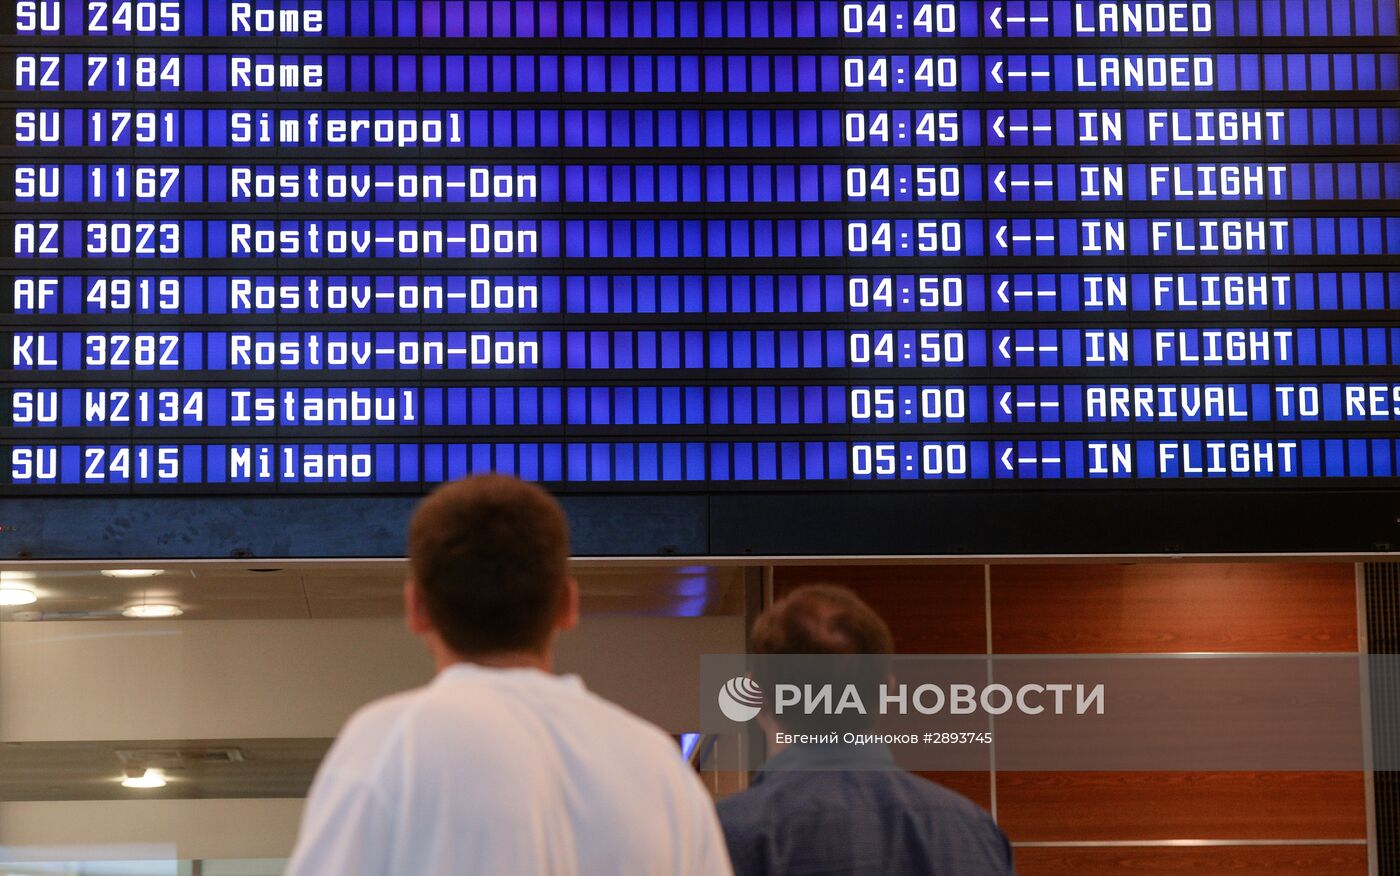 Авиакомпания "Аэрофлот" вернула рейс SU2134 Москва-Стамбул обратно в столицу